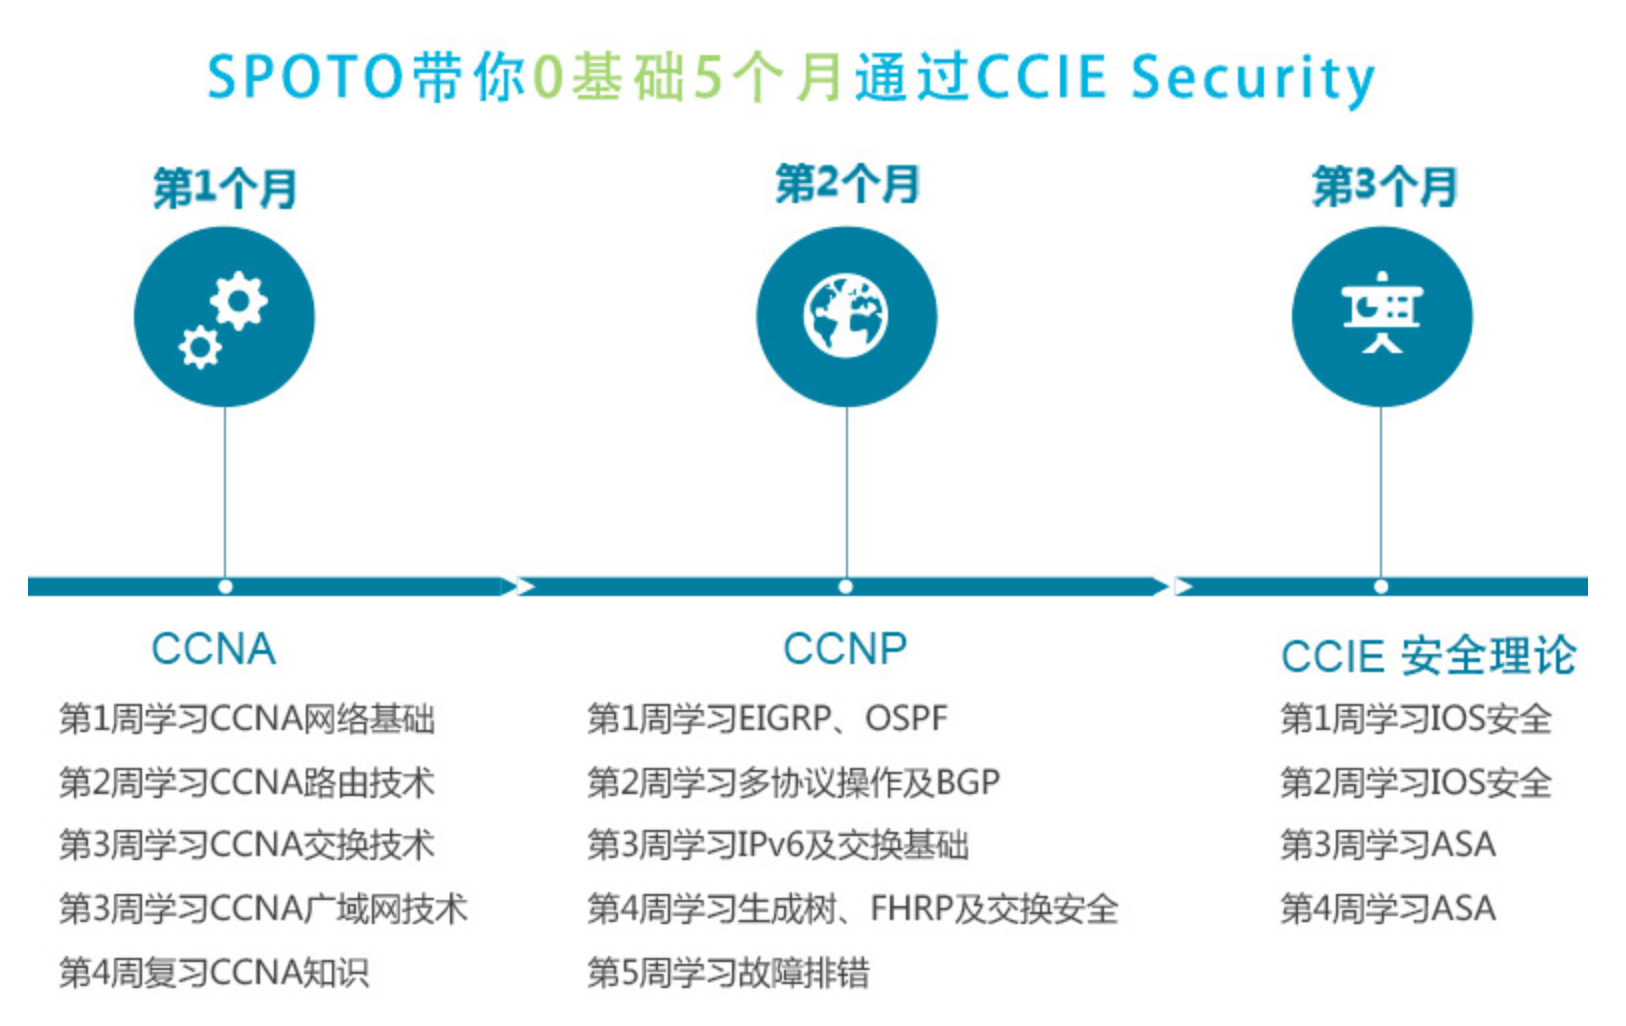 CCIE Security 思科安全专家认证 笔试理论